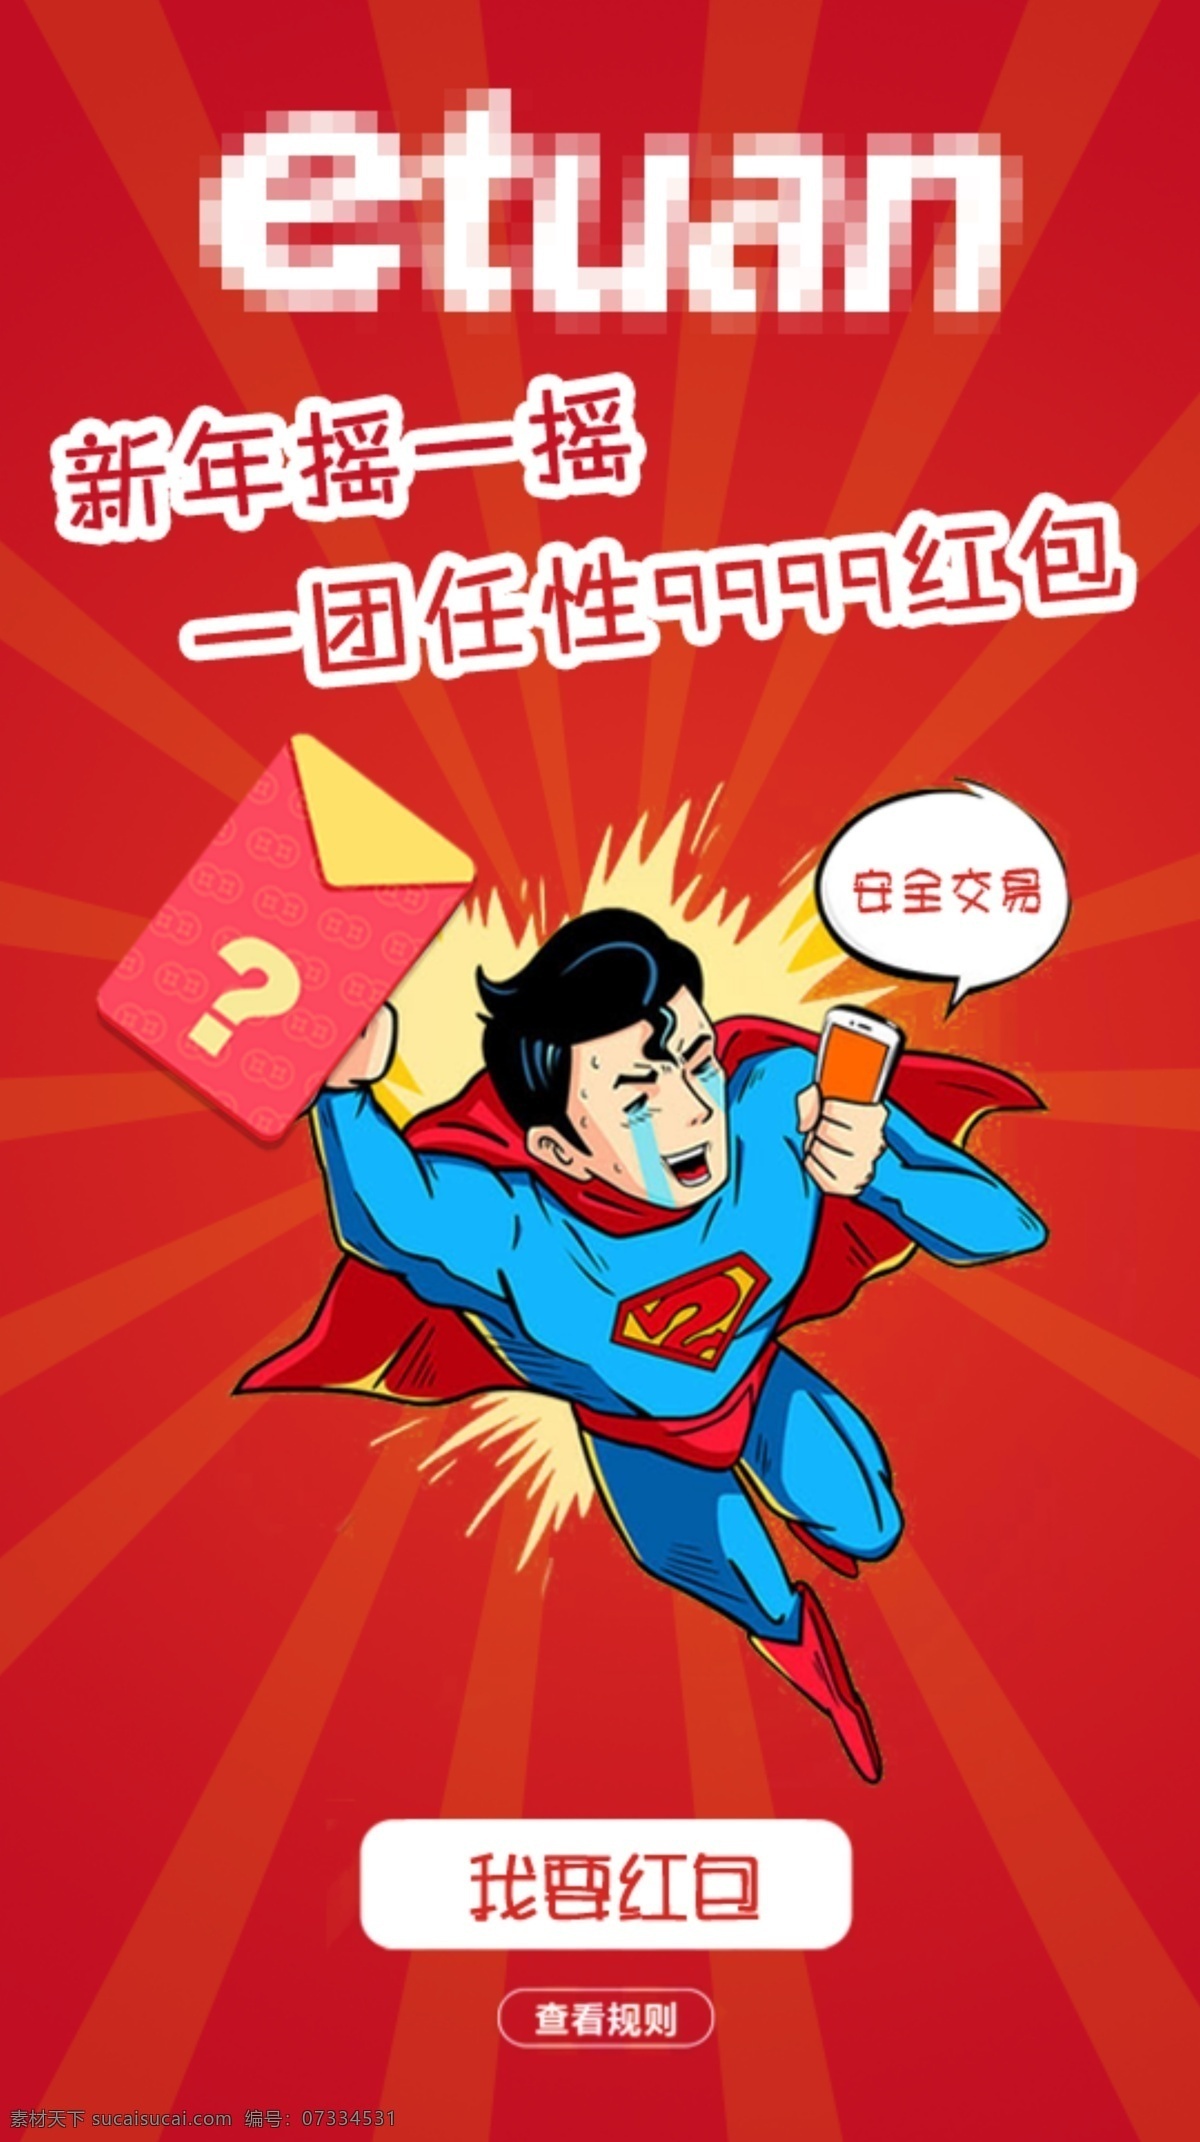 新年 微 信 红包 界面设计 卡通 超人 红包设计 微信红包 摇 界面 微信红包海报